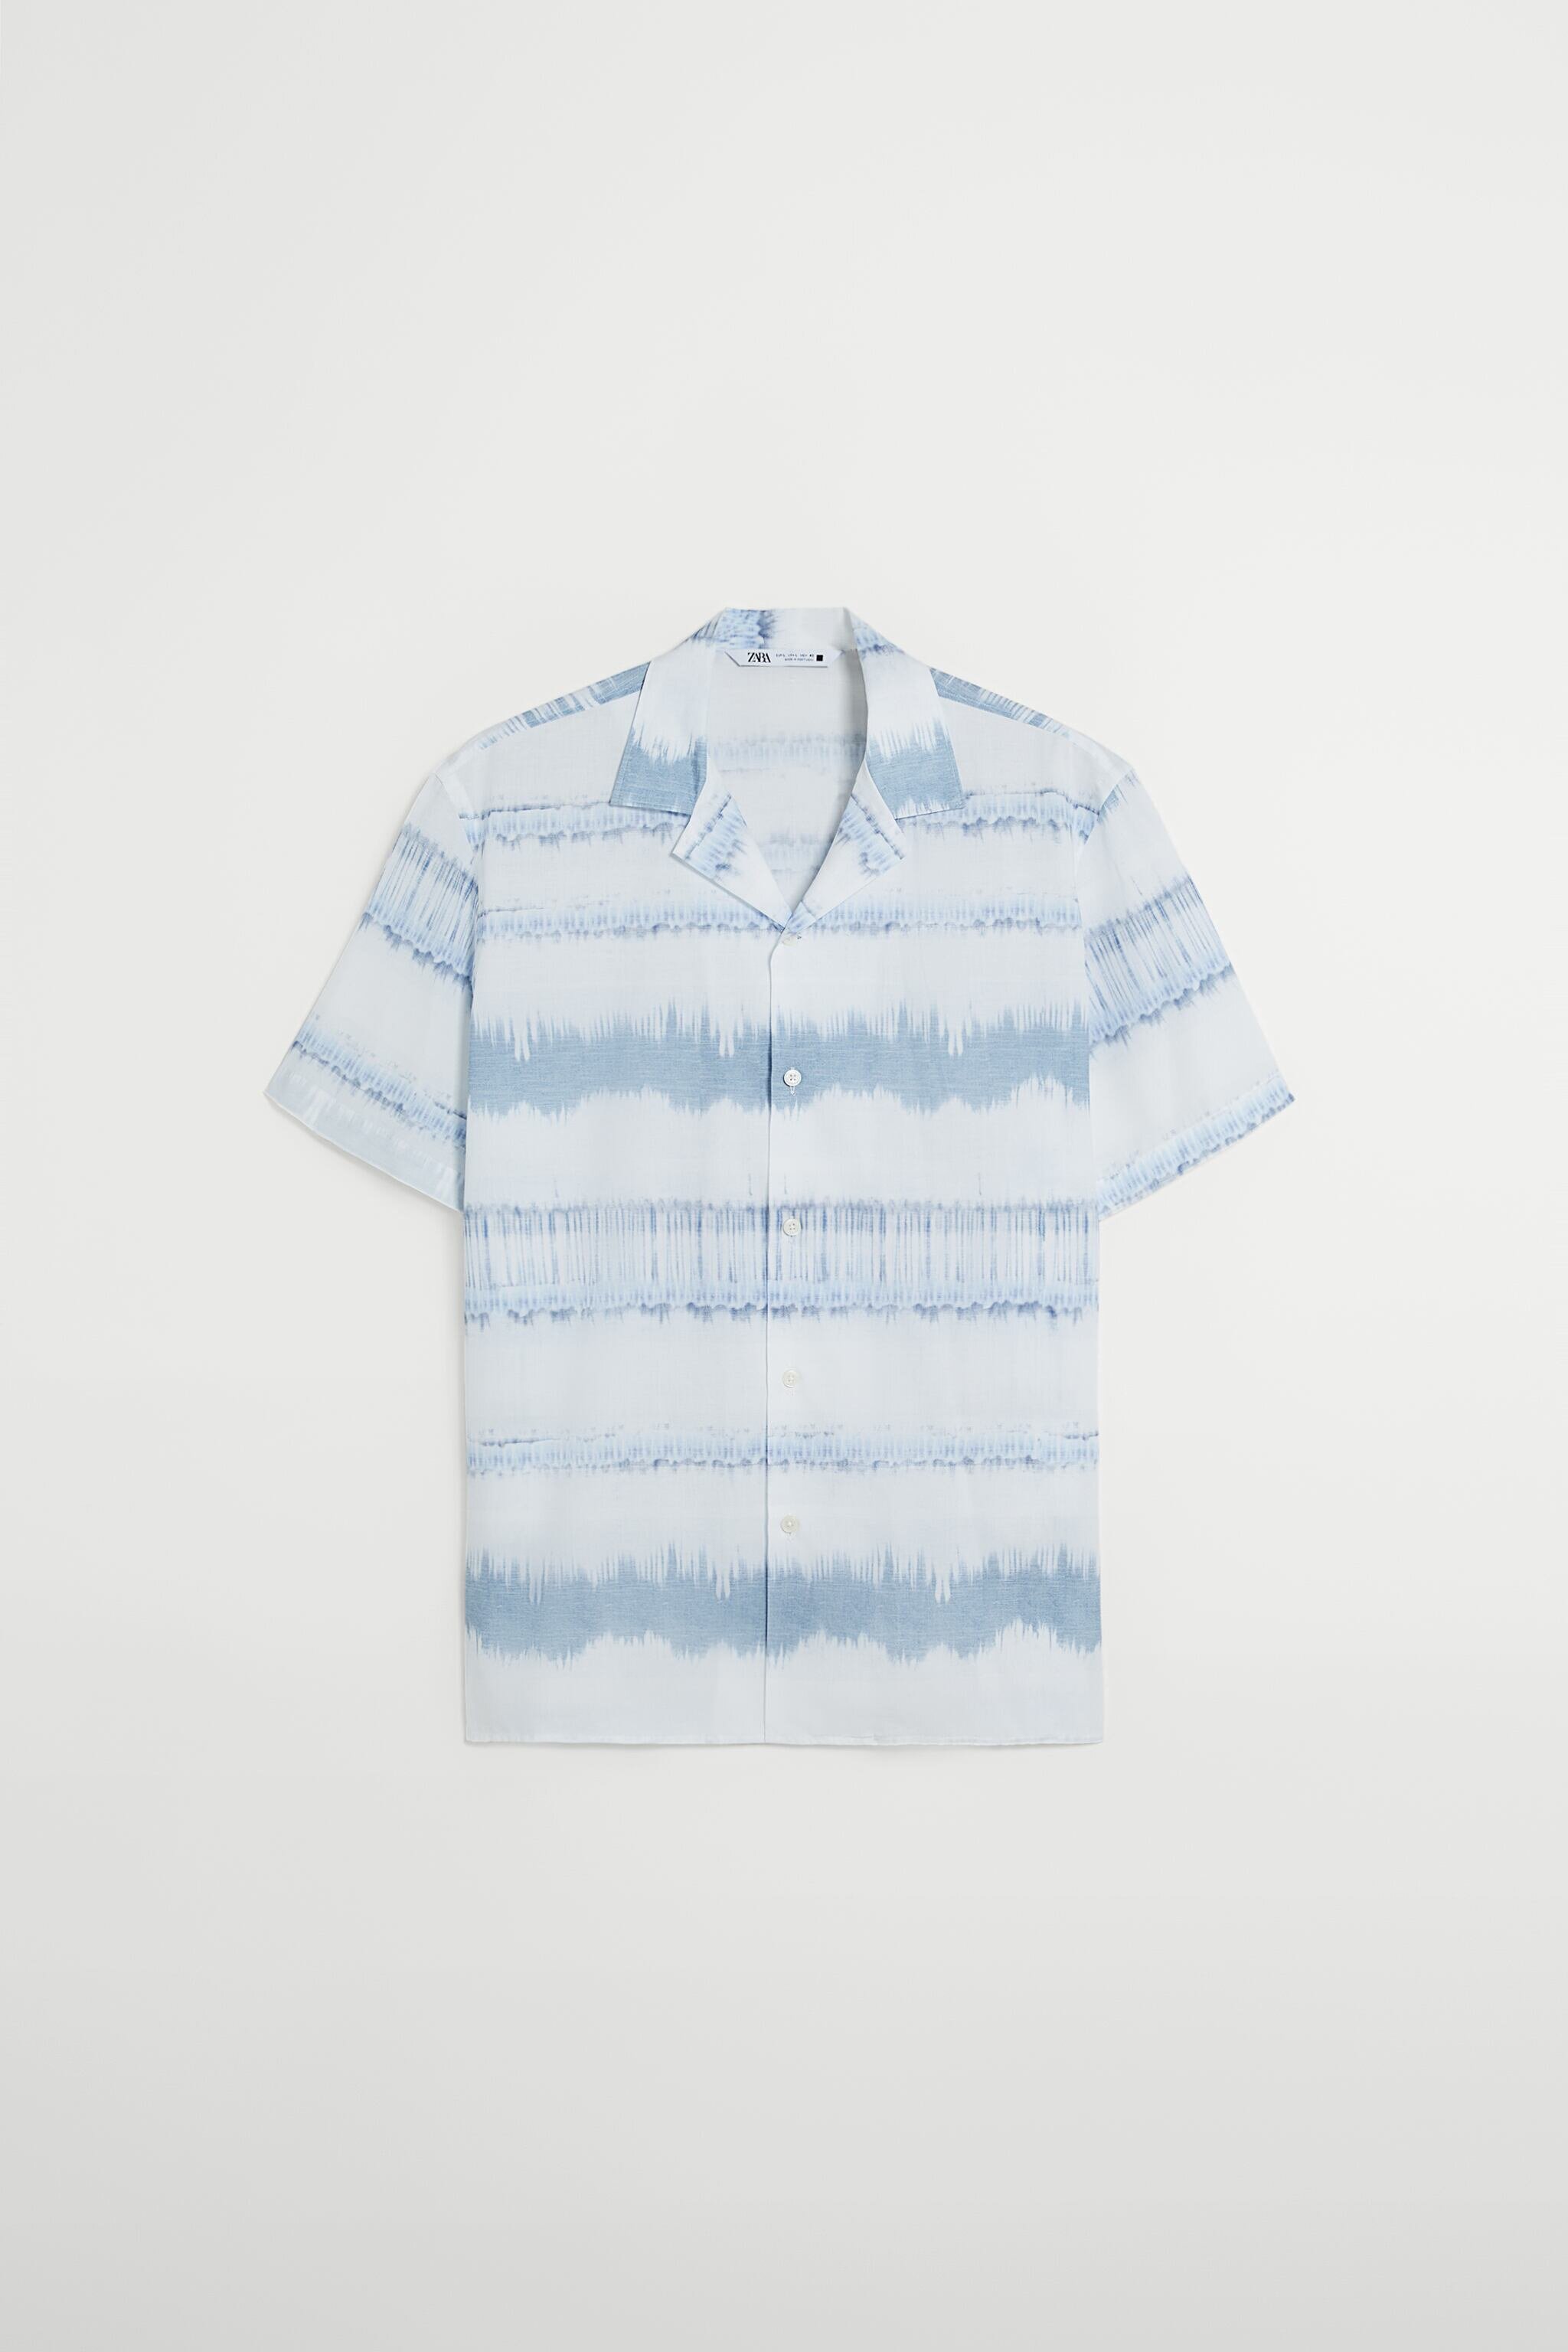 Tie-Dye Print Shirt, ₱1,595